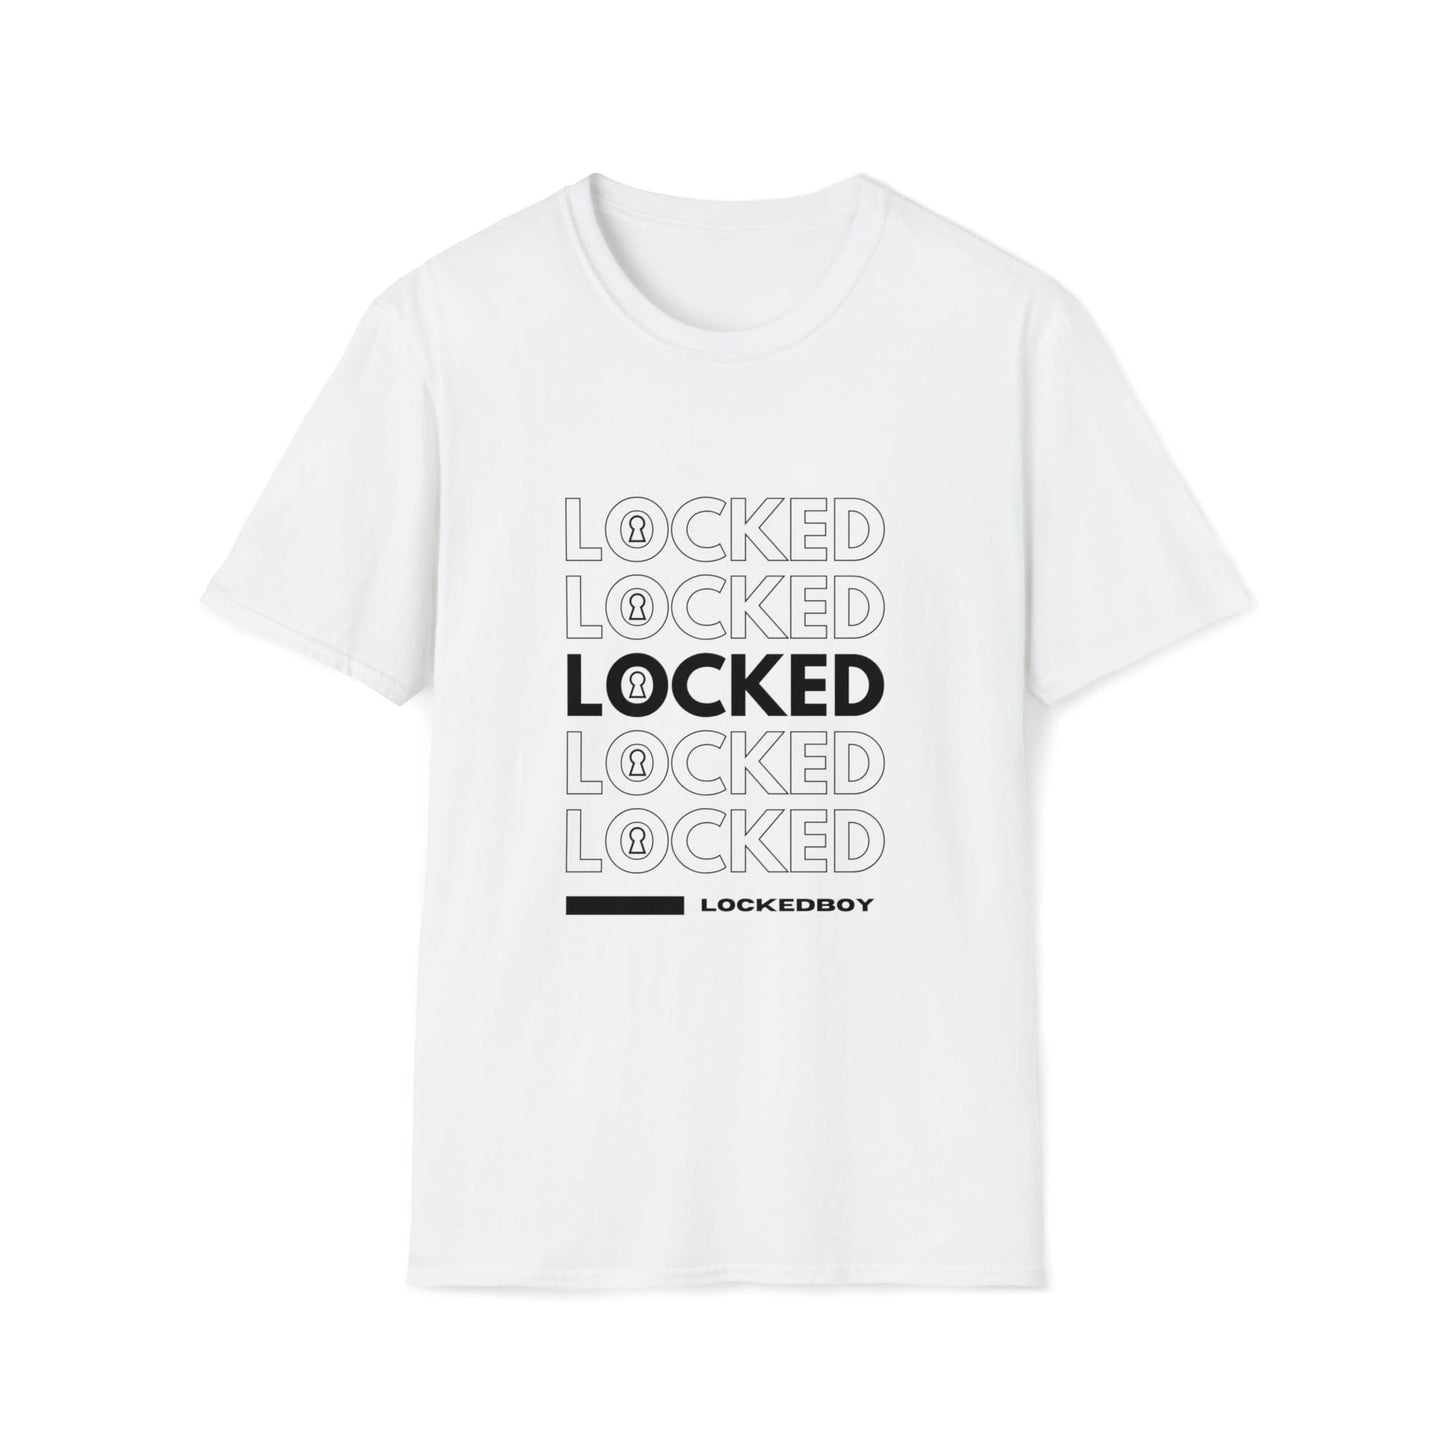 T-Shirt White / S LOCKED Inspo (black text) - Chastity Shirts by LockedBoy Athletics LEATHERDADDY BATOR